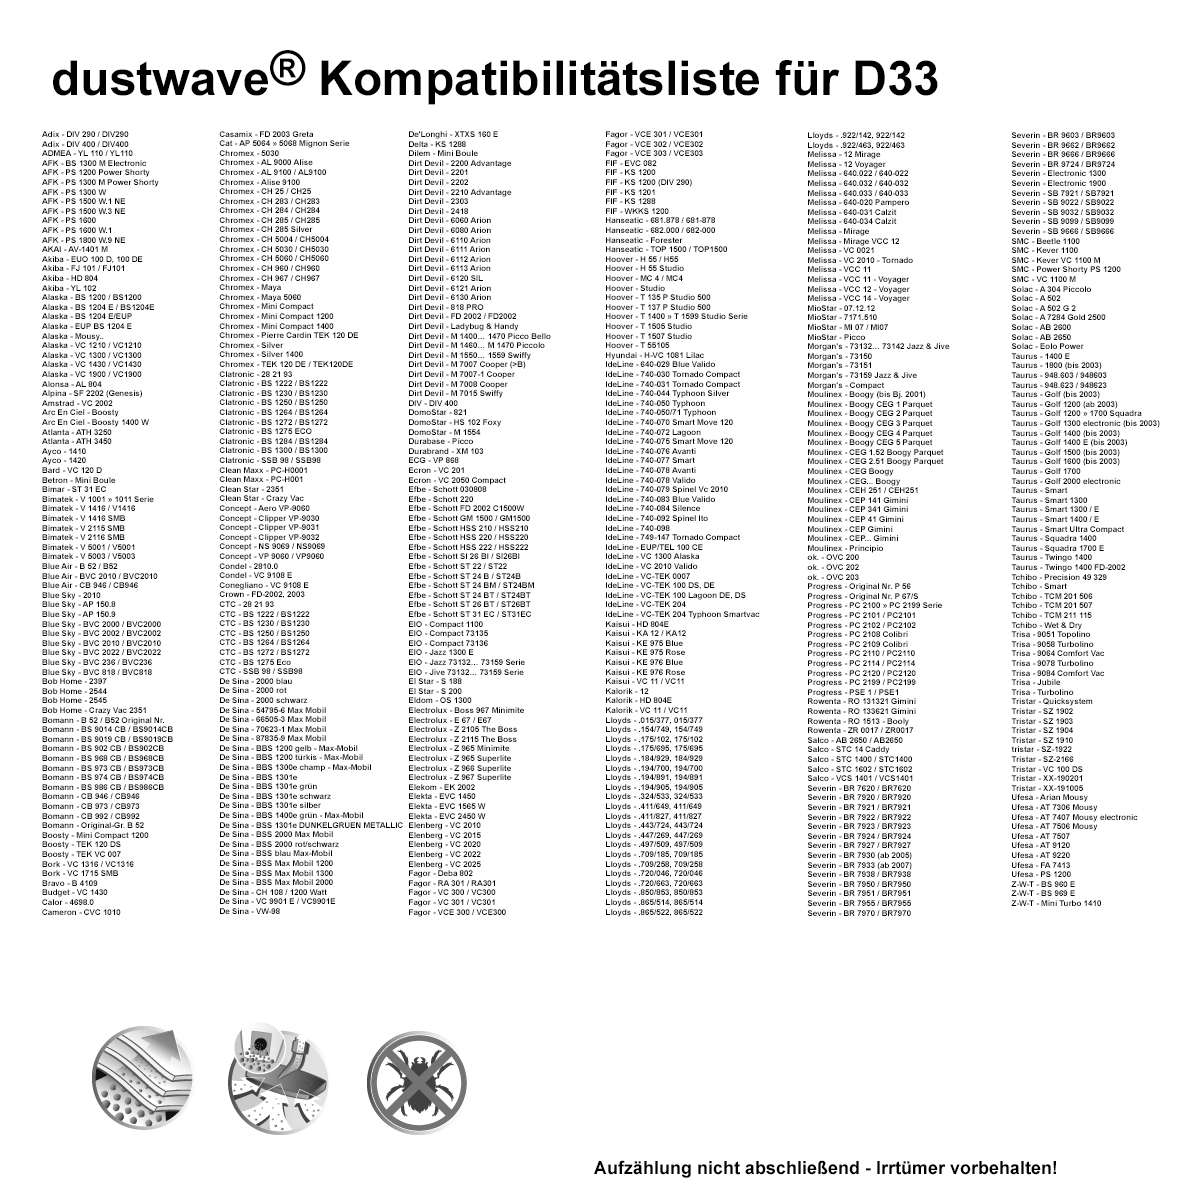 Dustwave® 20 Staubsaugerbeutel für Arc En Ciel - Boosty 1400 W - hocheffizient, mehrlagiges Mikrovlies mit Hygieneverschluss - Made in Germany